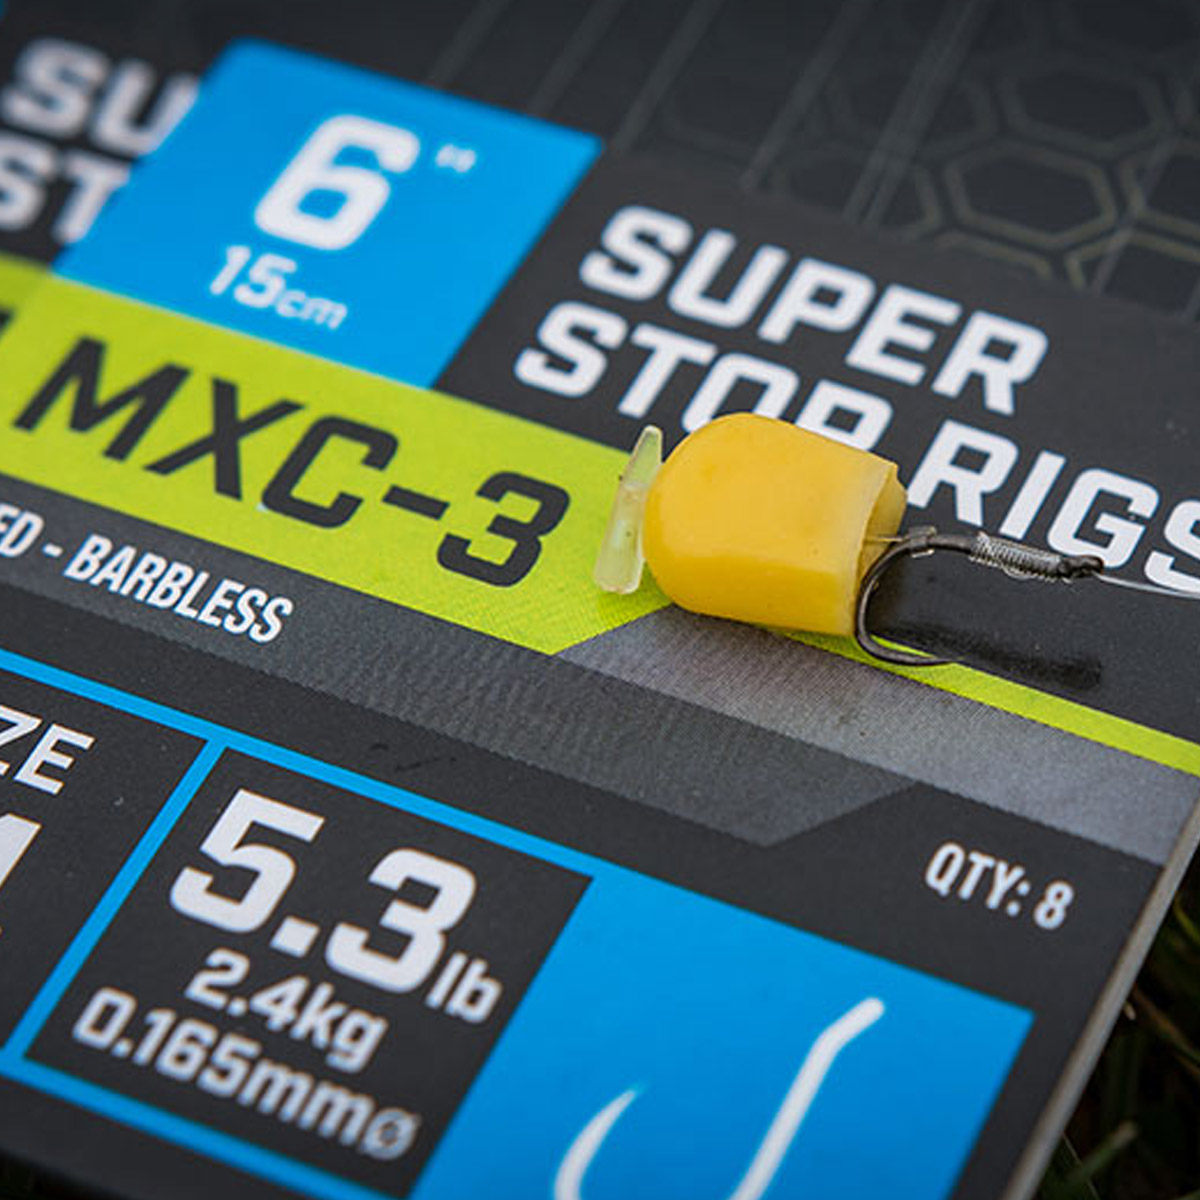 Matrix MXC-3 6" Super Stop Rigs